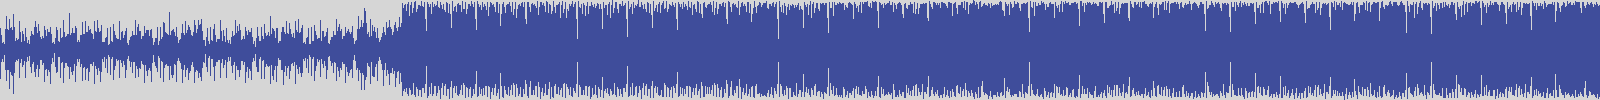 noclouds_chillout [NOC049] Flatt Sk - Get [Original Mix] audio wave form